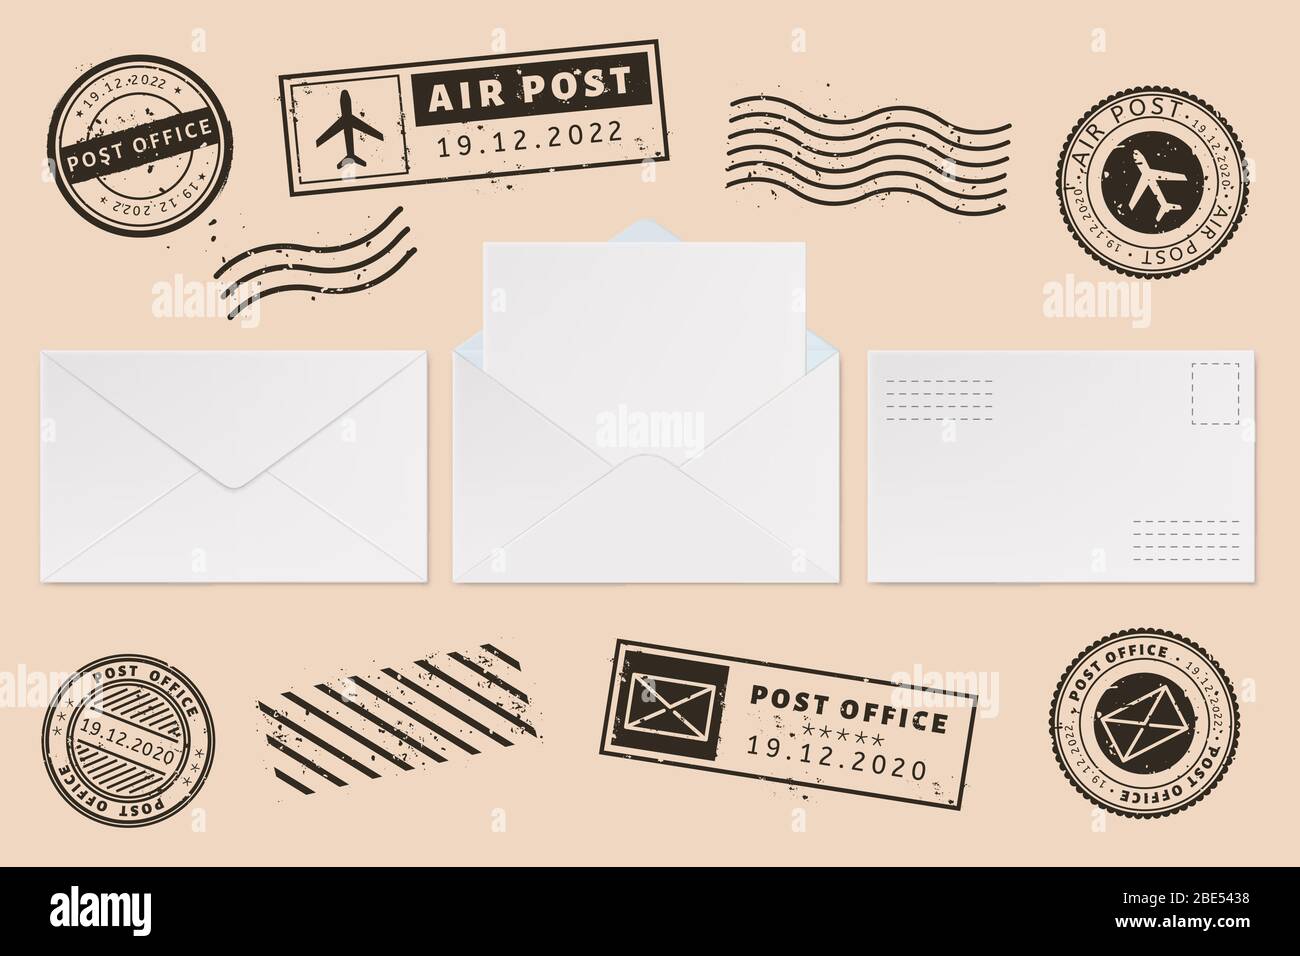 Umschlagvorlage mit Stempel-Etikett. Briefmarke und Briefmarke, offener Briefumschlag mit leerem Papier Briefbogen, Postamt Business Mockups Vektor Stock Vektor